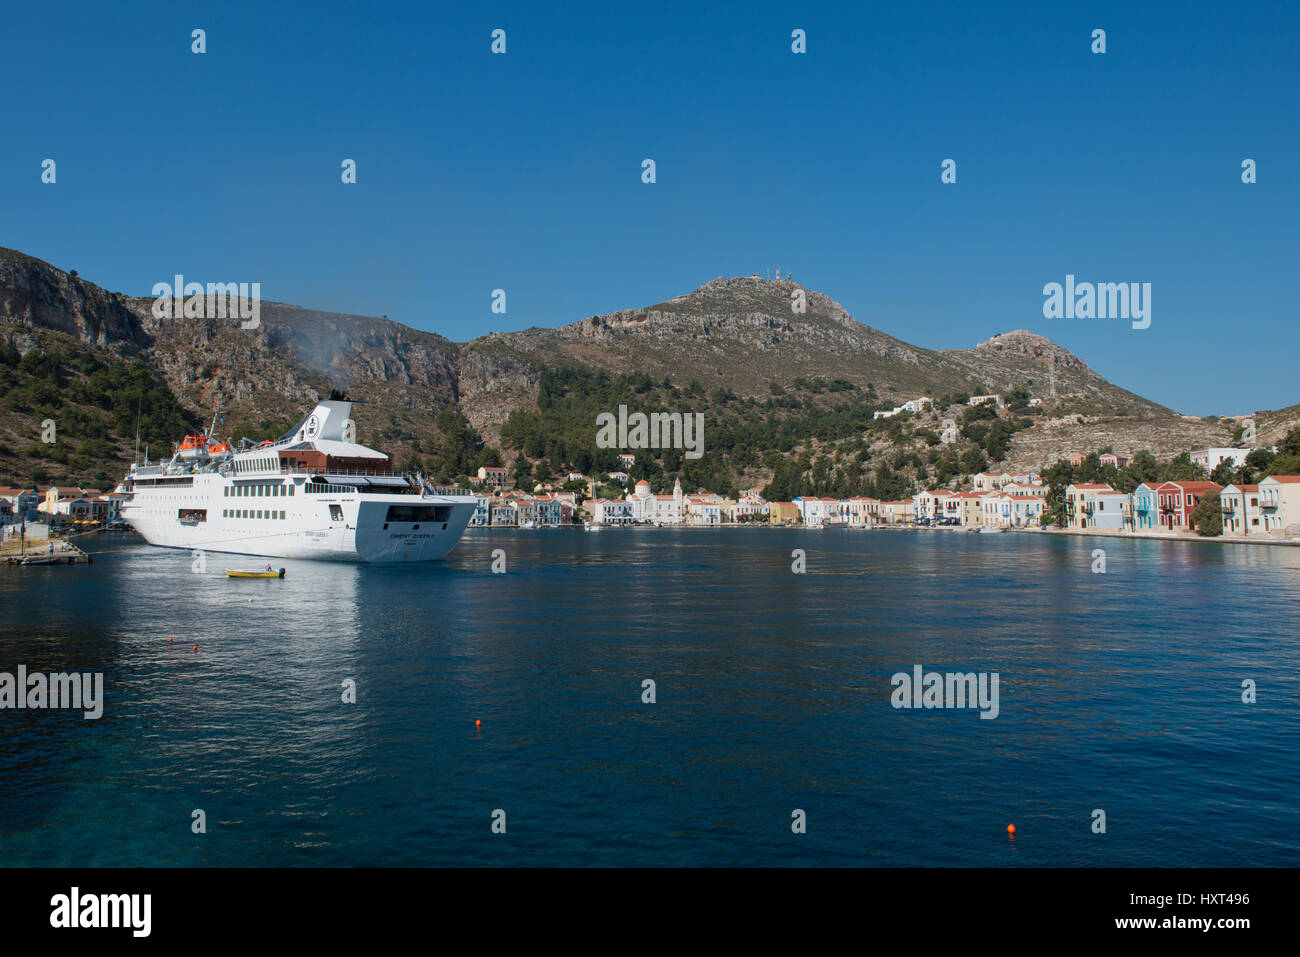 Hafensicht mit bunten Häusern, großer weißer Yacht und kahlen Bergen, Insel Kastellorizo, Dodekanes, Griechenland Foto Stock